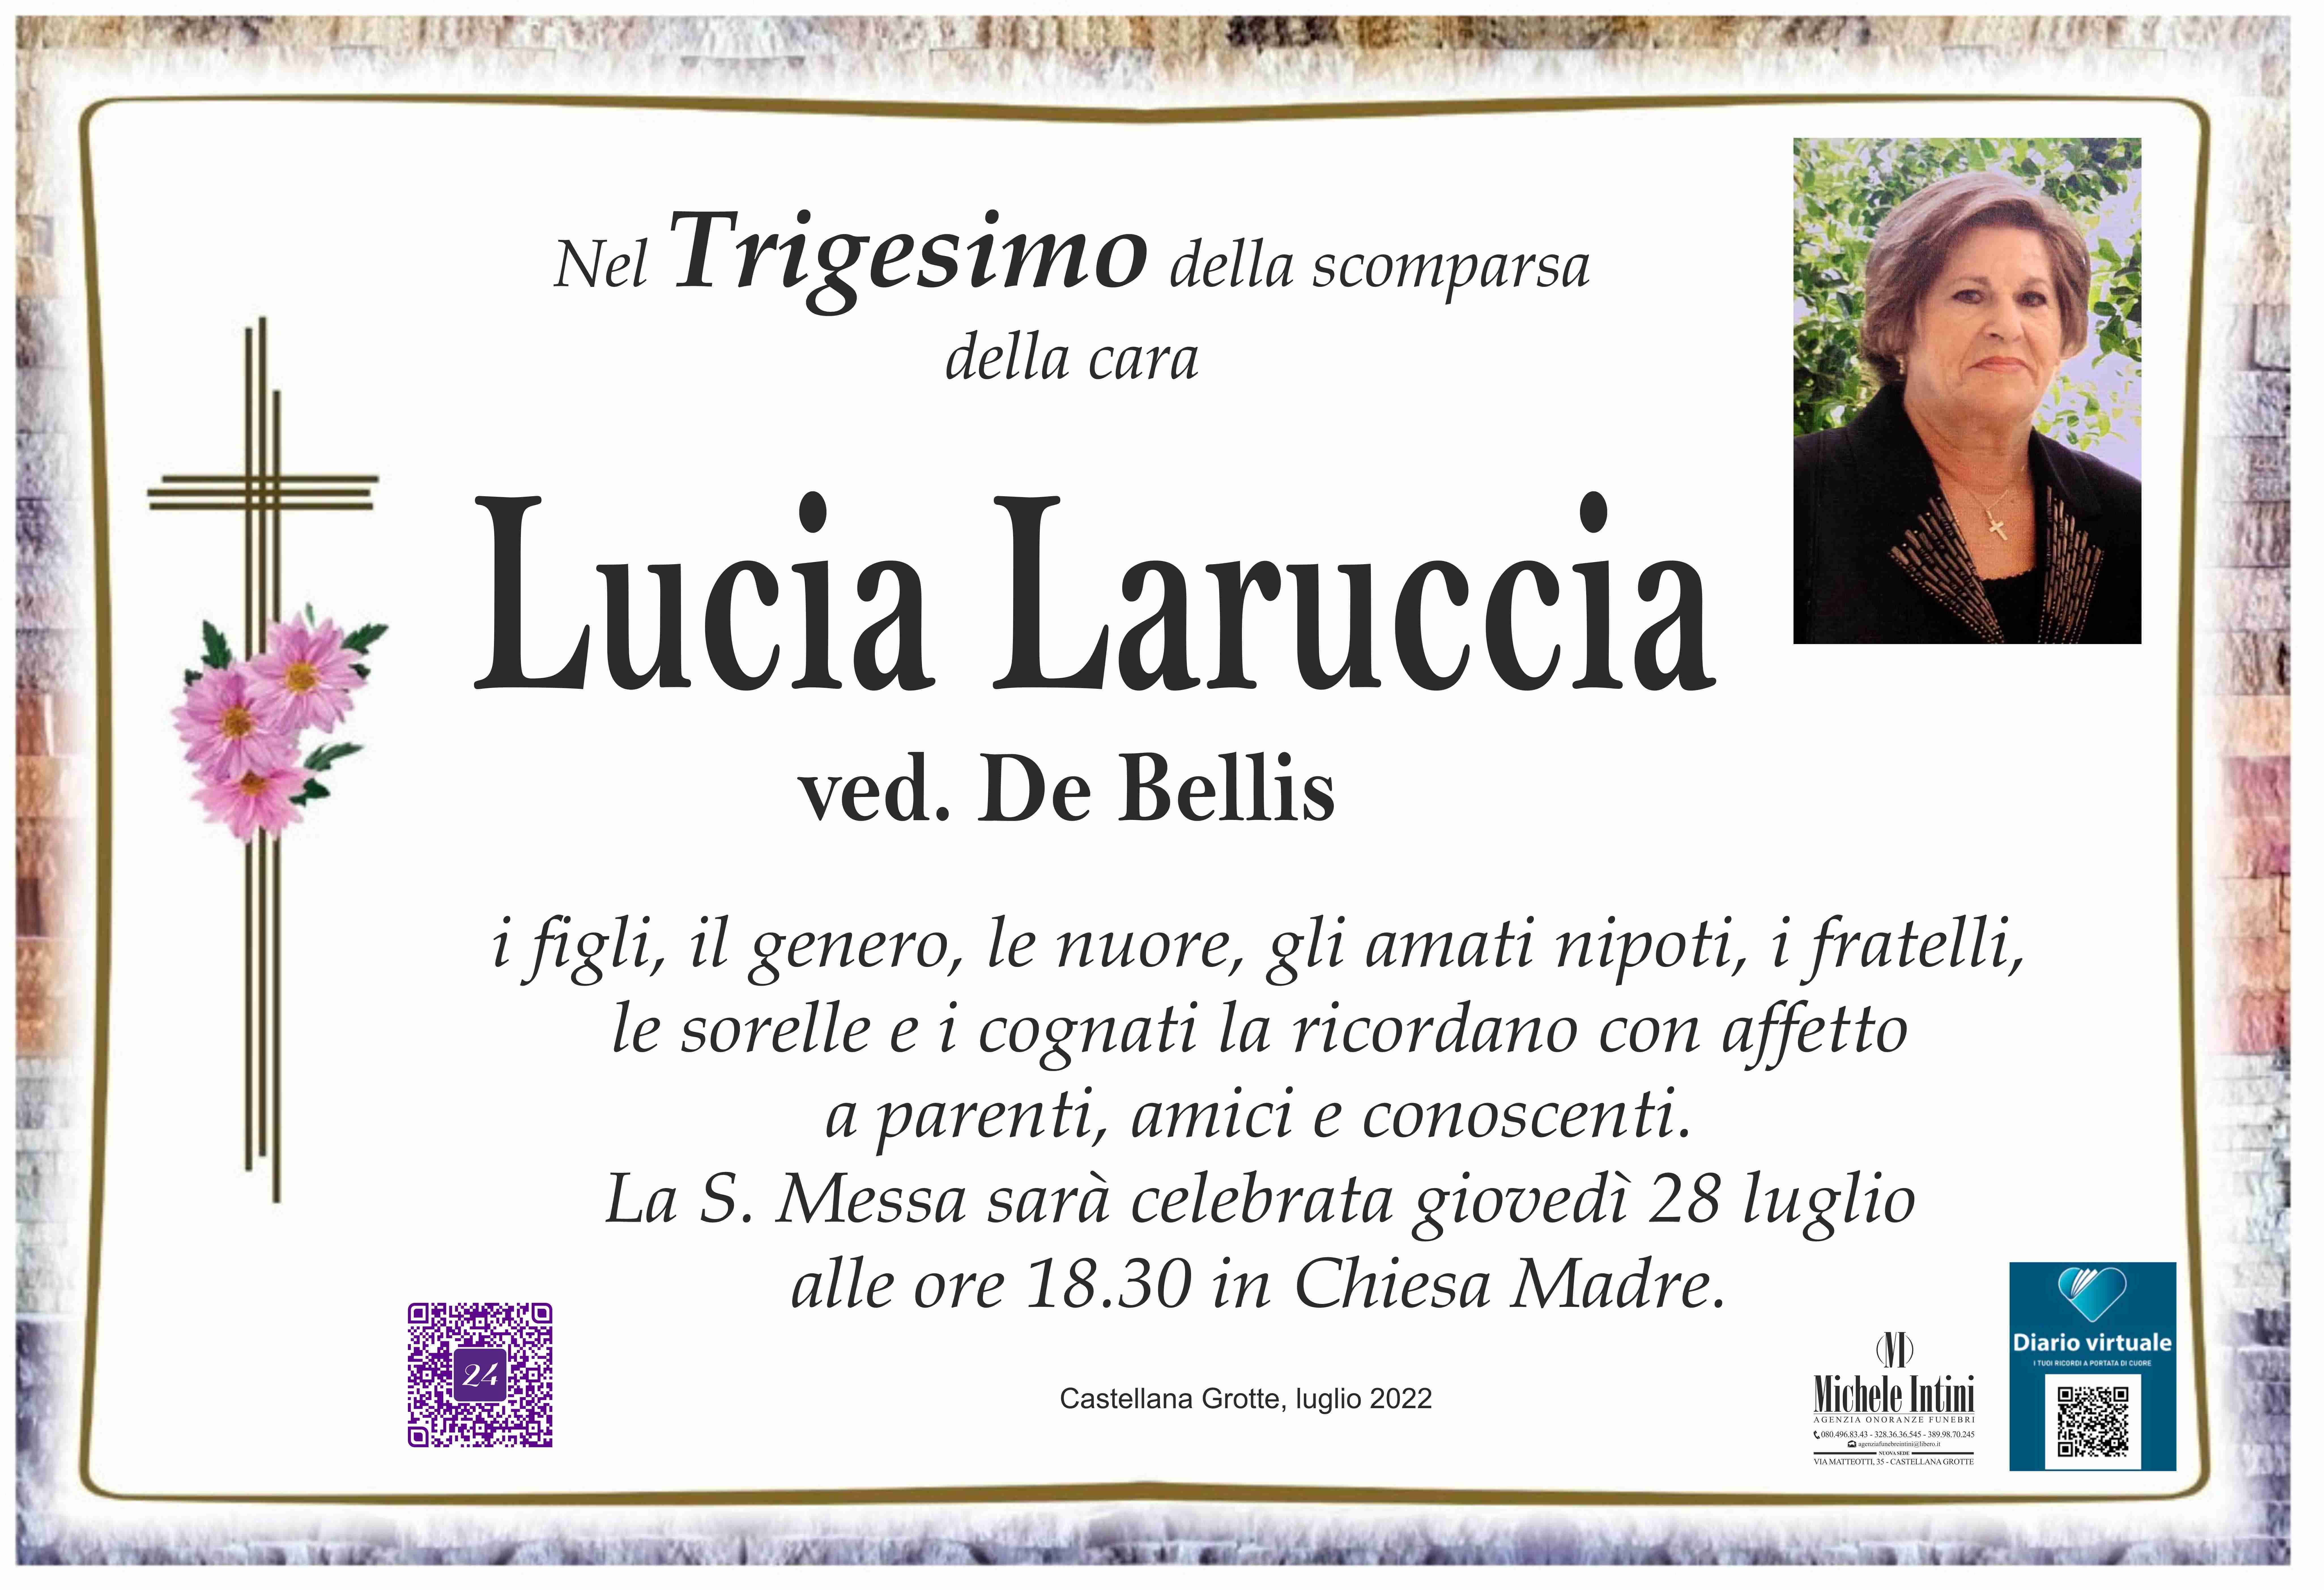 Lucia Laruccia